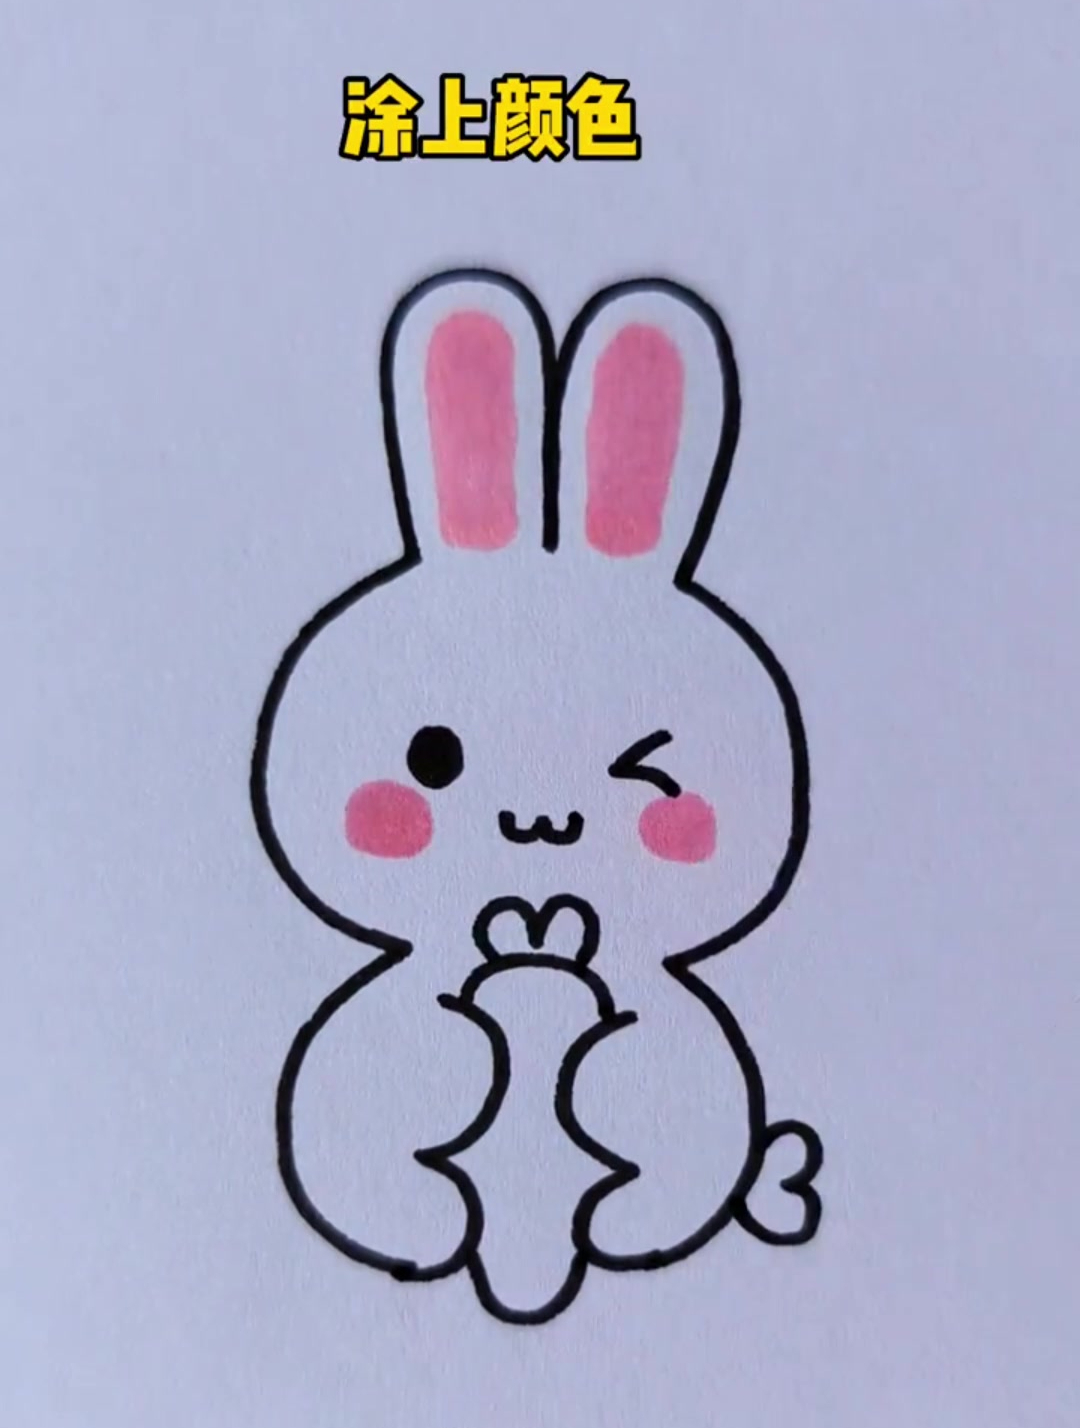 用数字3画一个可爱的小兔子,赶快也拥有一只吧,超级简单哦